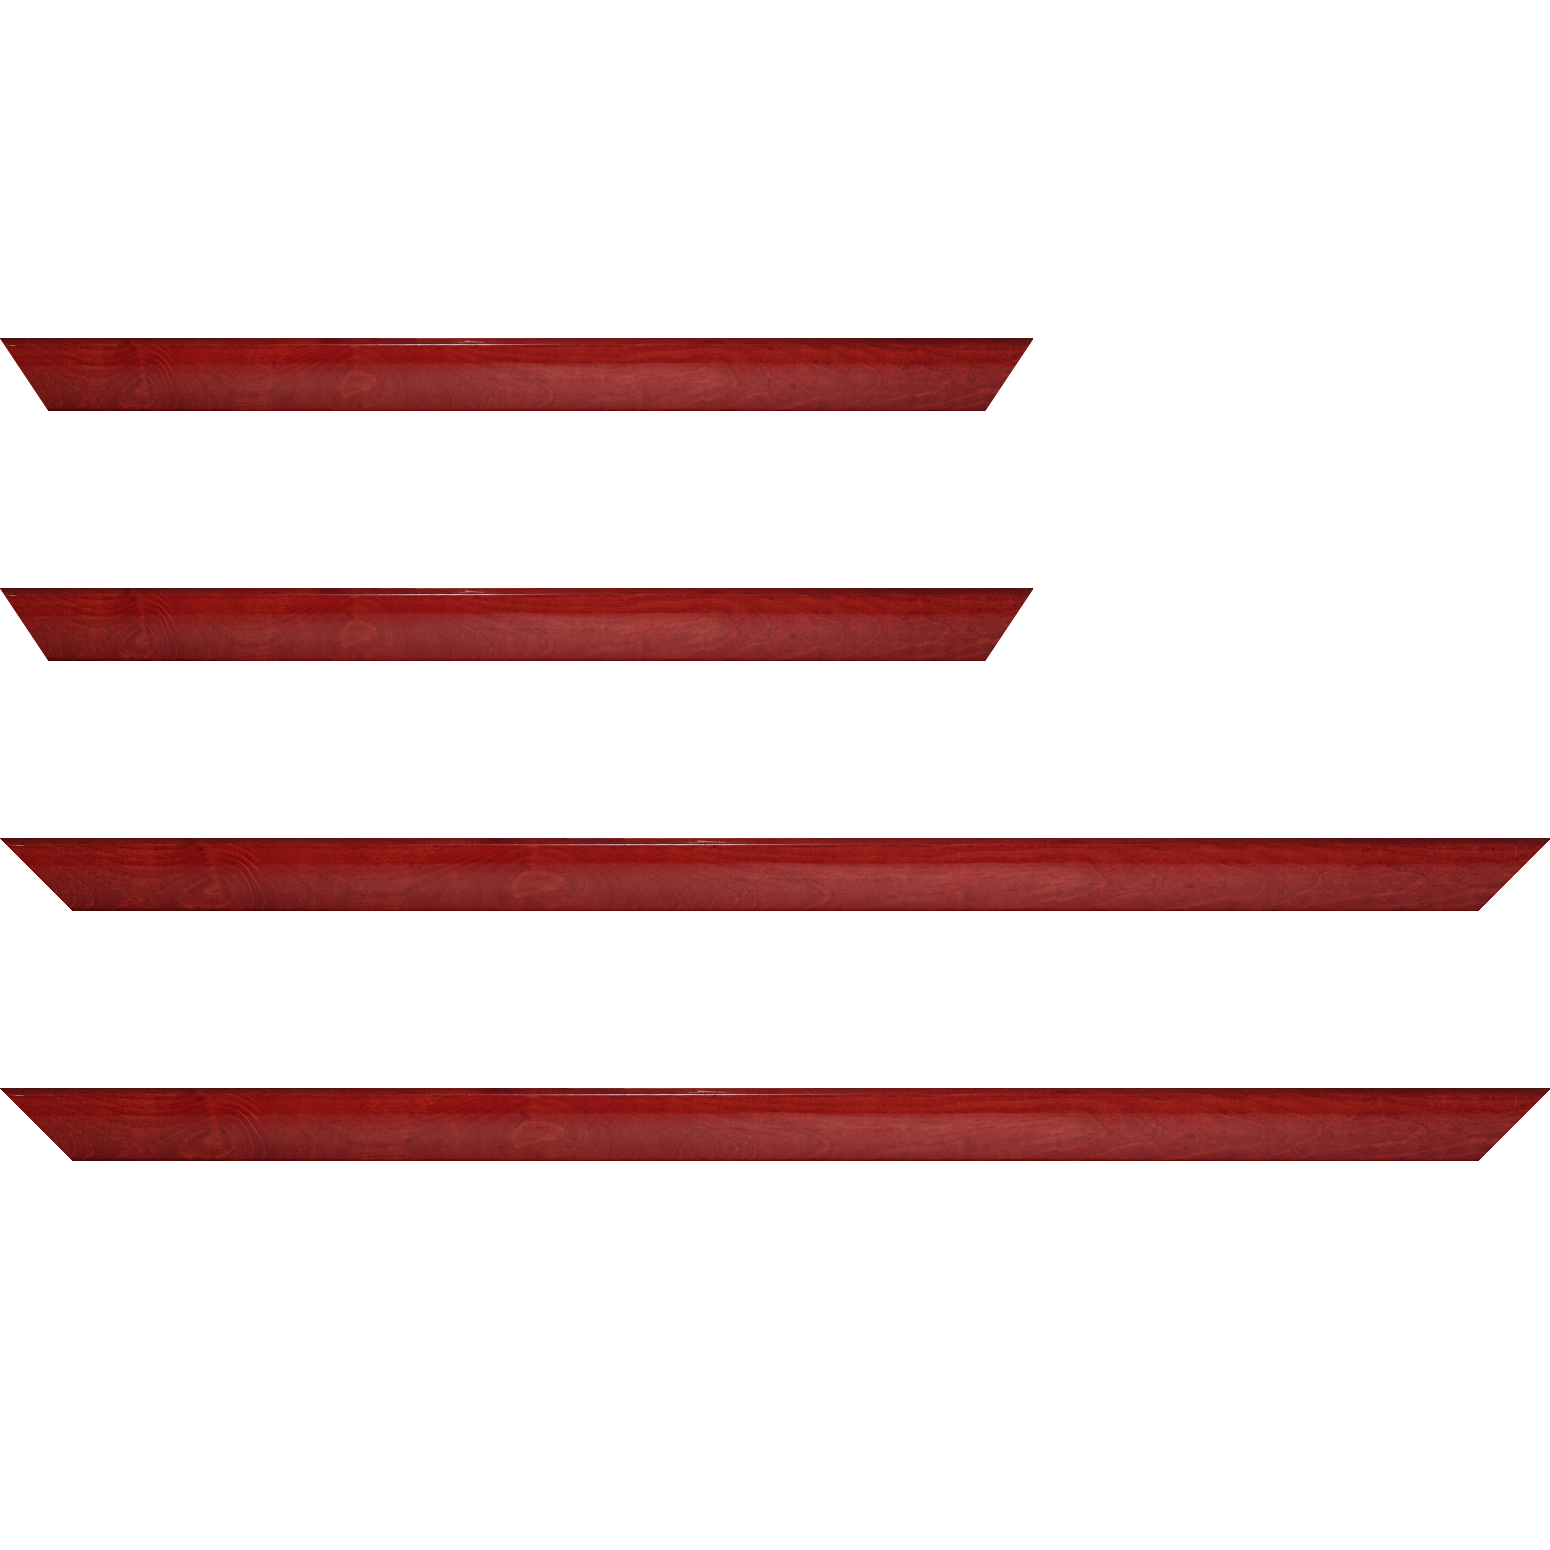 Baguette bois profil arrondi en pente plongeant largeur 2.4cm couleur rouge cerise finition vernis brillant,veine du bois  apparent (pin) , - 92x60